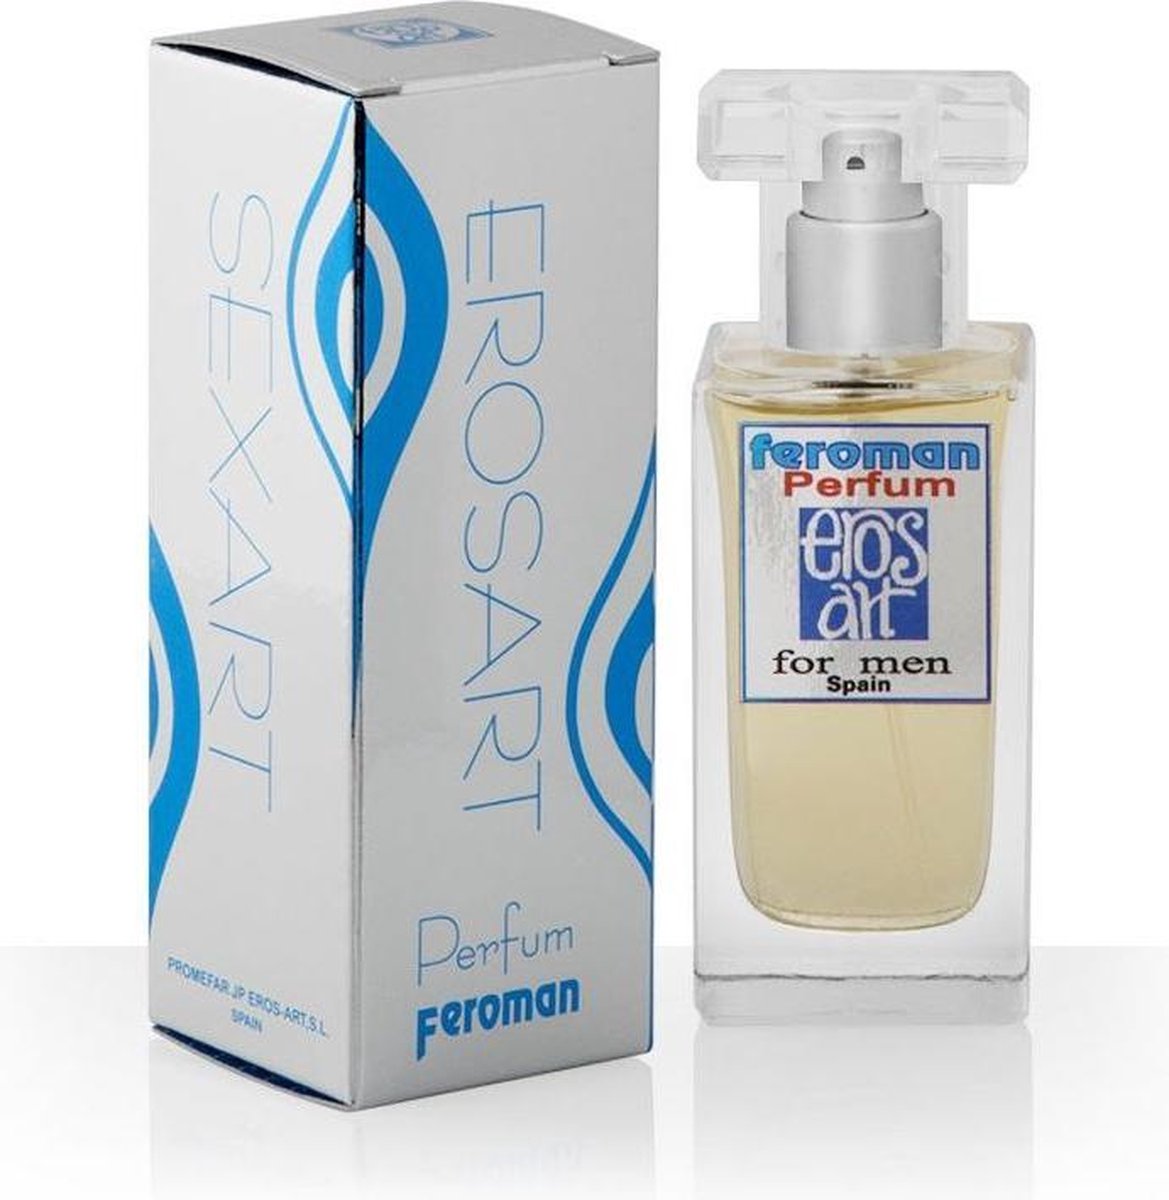 Perfum Feroman 50 ml